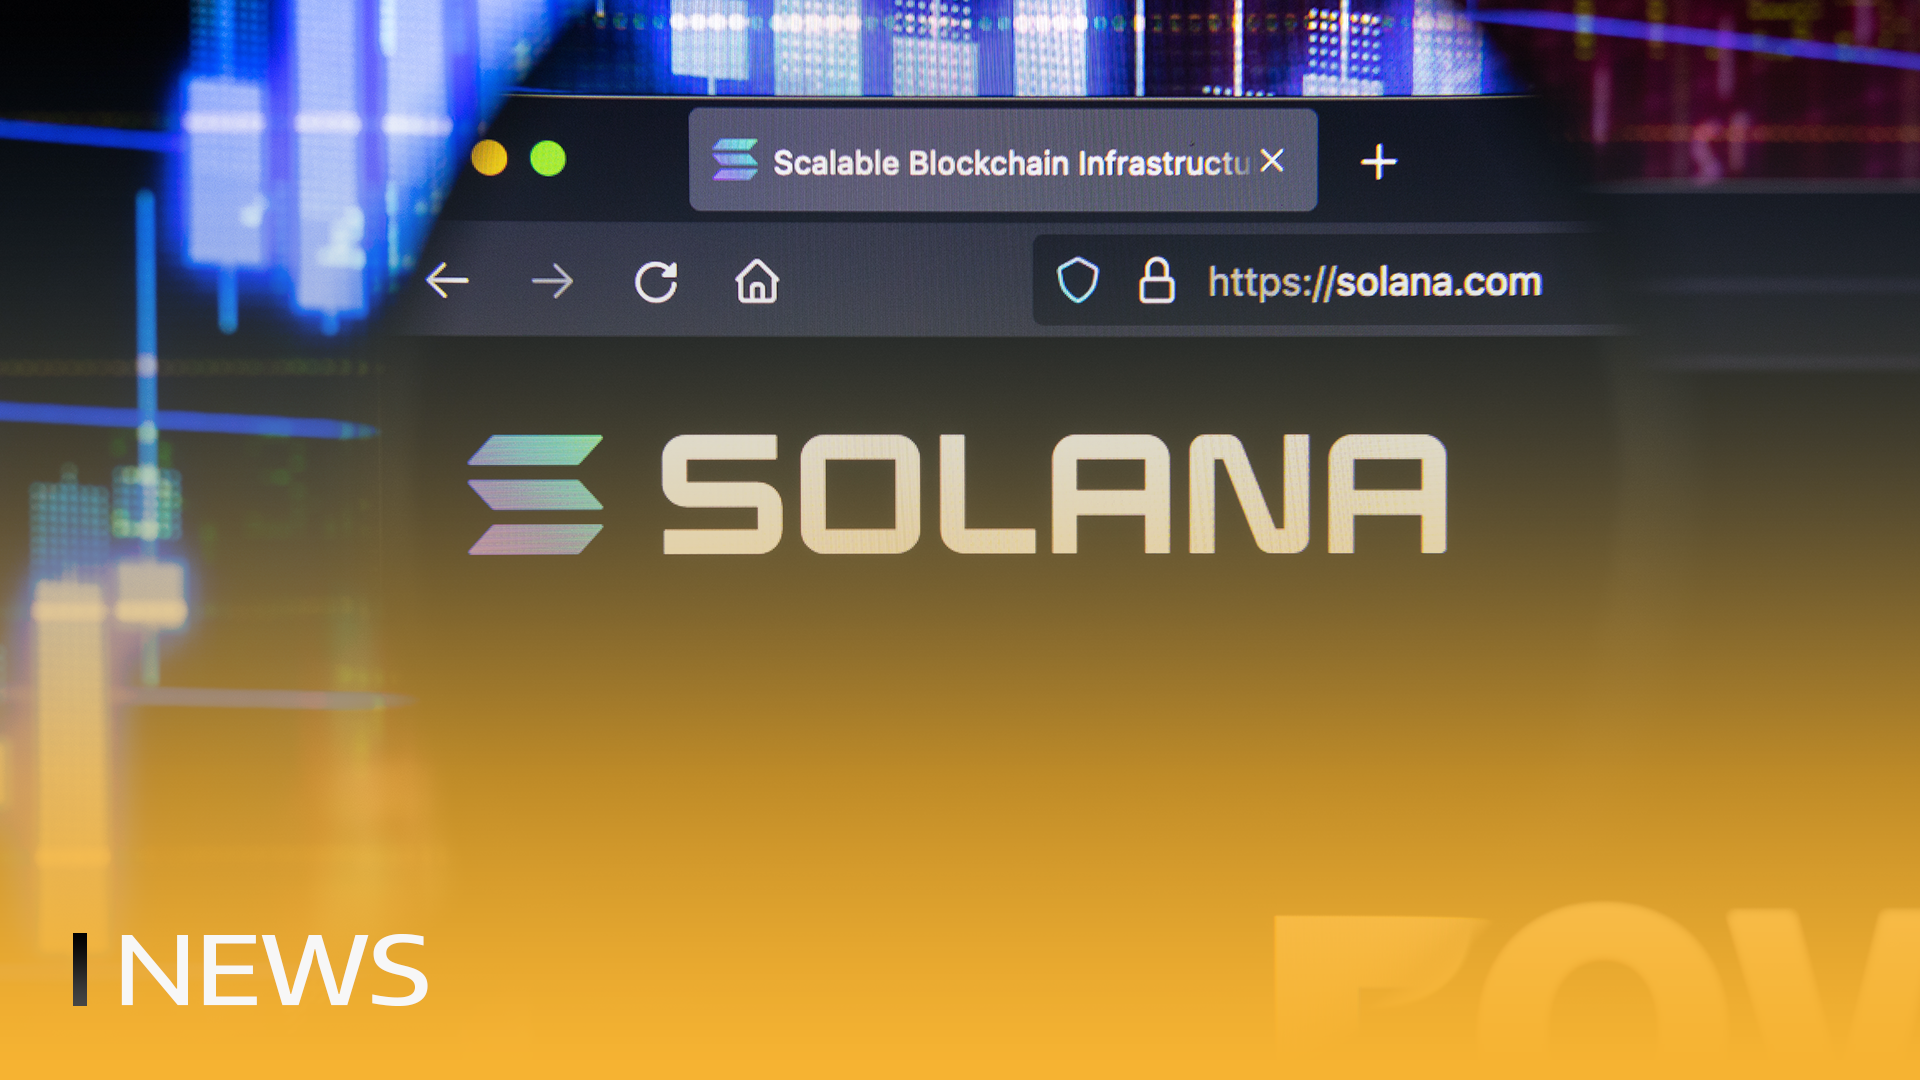 Interesse em Solana sobe acima de Ethereum no Google